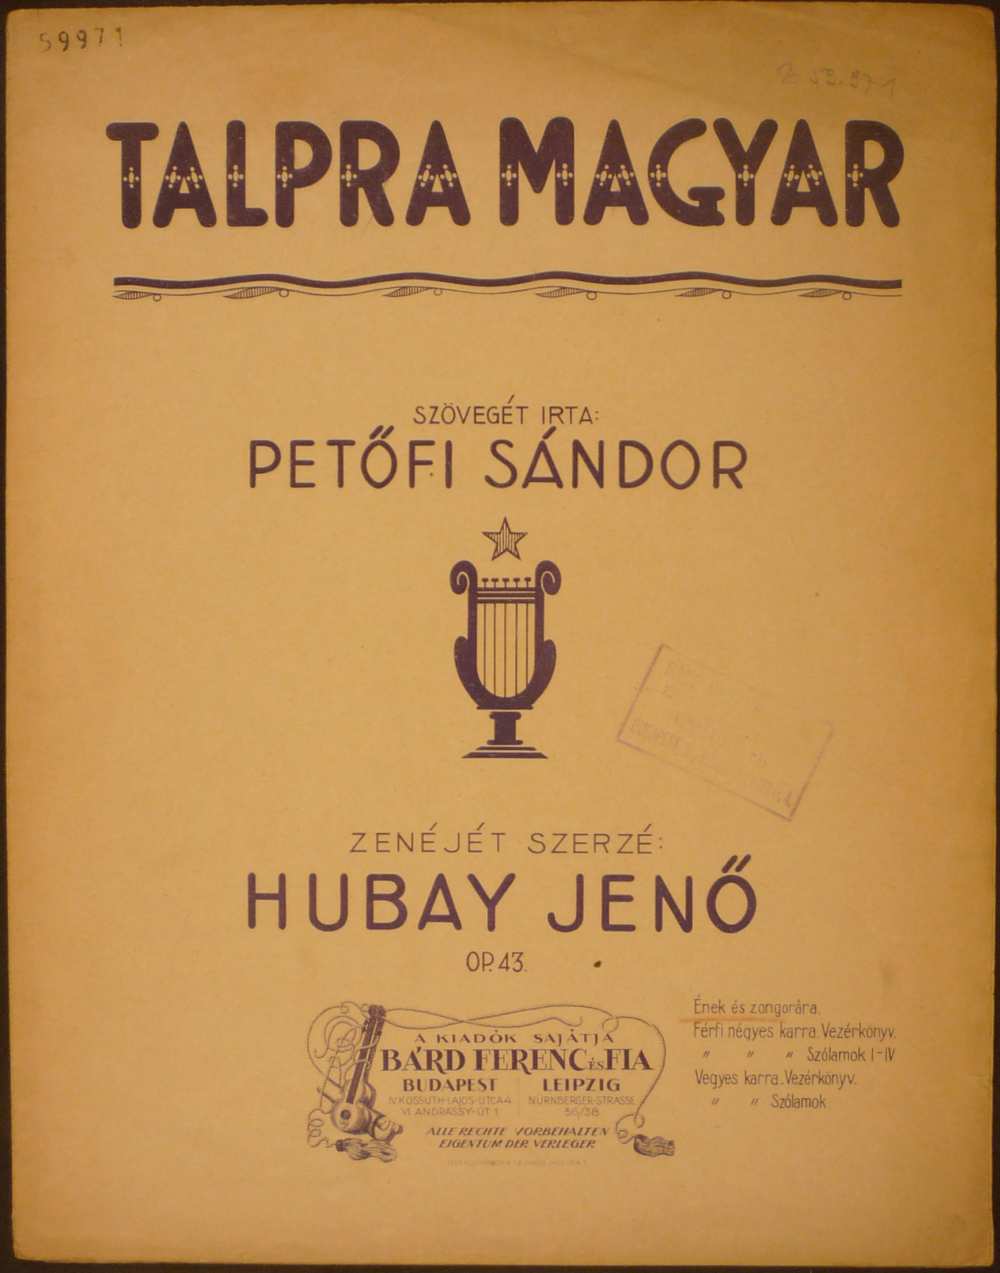 Hubay Jenő: Talpra magyar. Op. 43., Budapest, Bárd Ferenc és Fia, s. a. – Színháztörténeti és Zeneműtár, Z 59.971